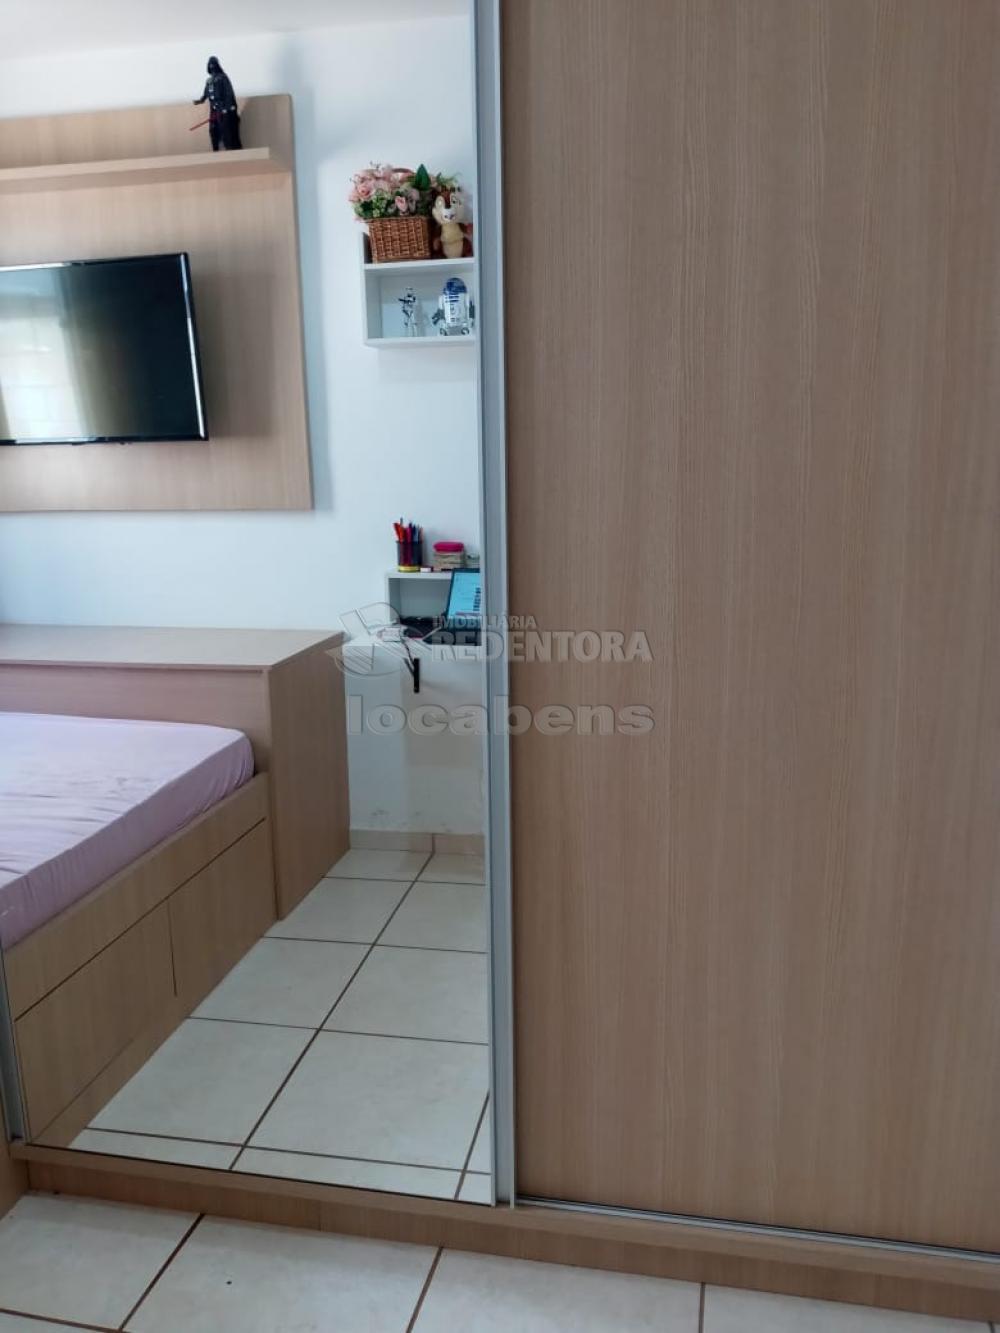 Comprar Apartamento / Padrão em São José do Rio Preto R$ 210.000,00 - Foto 8